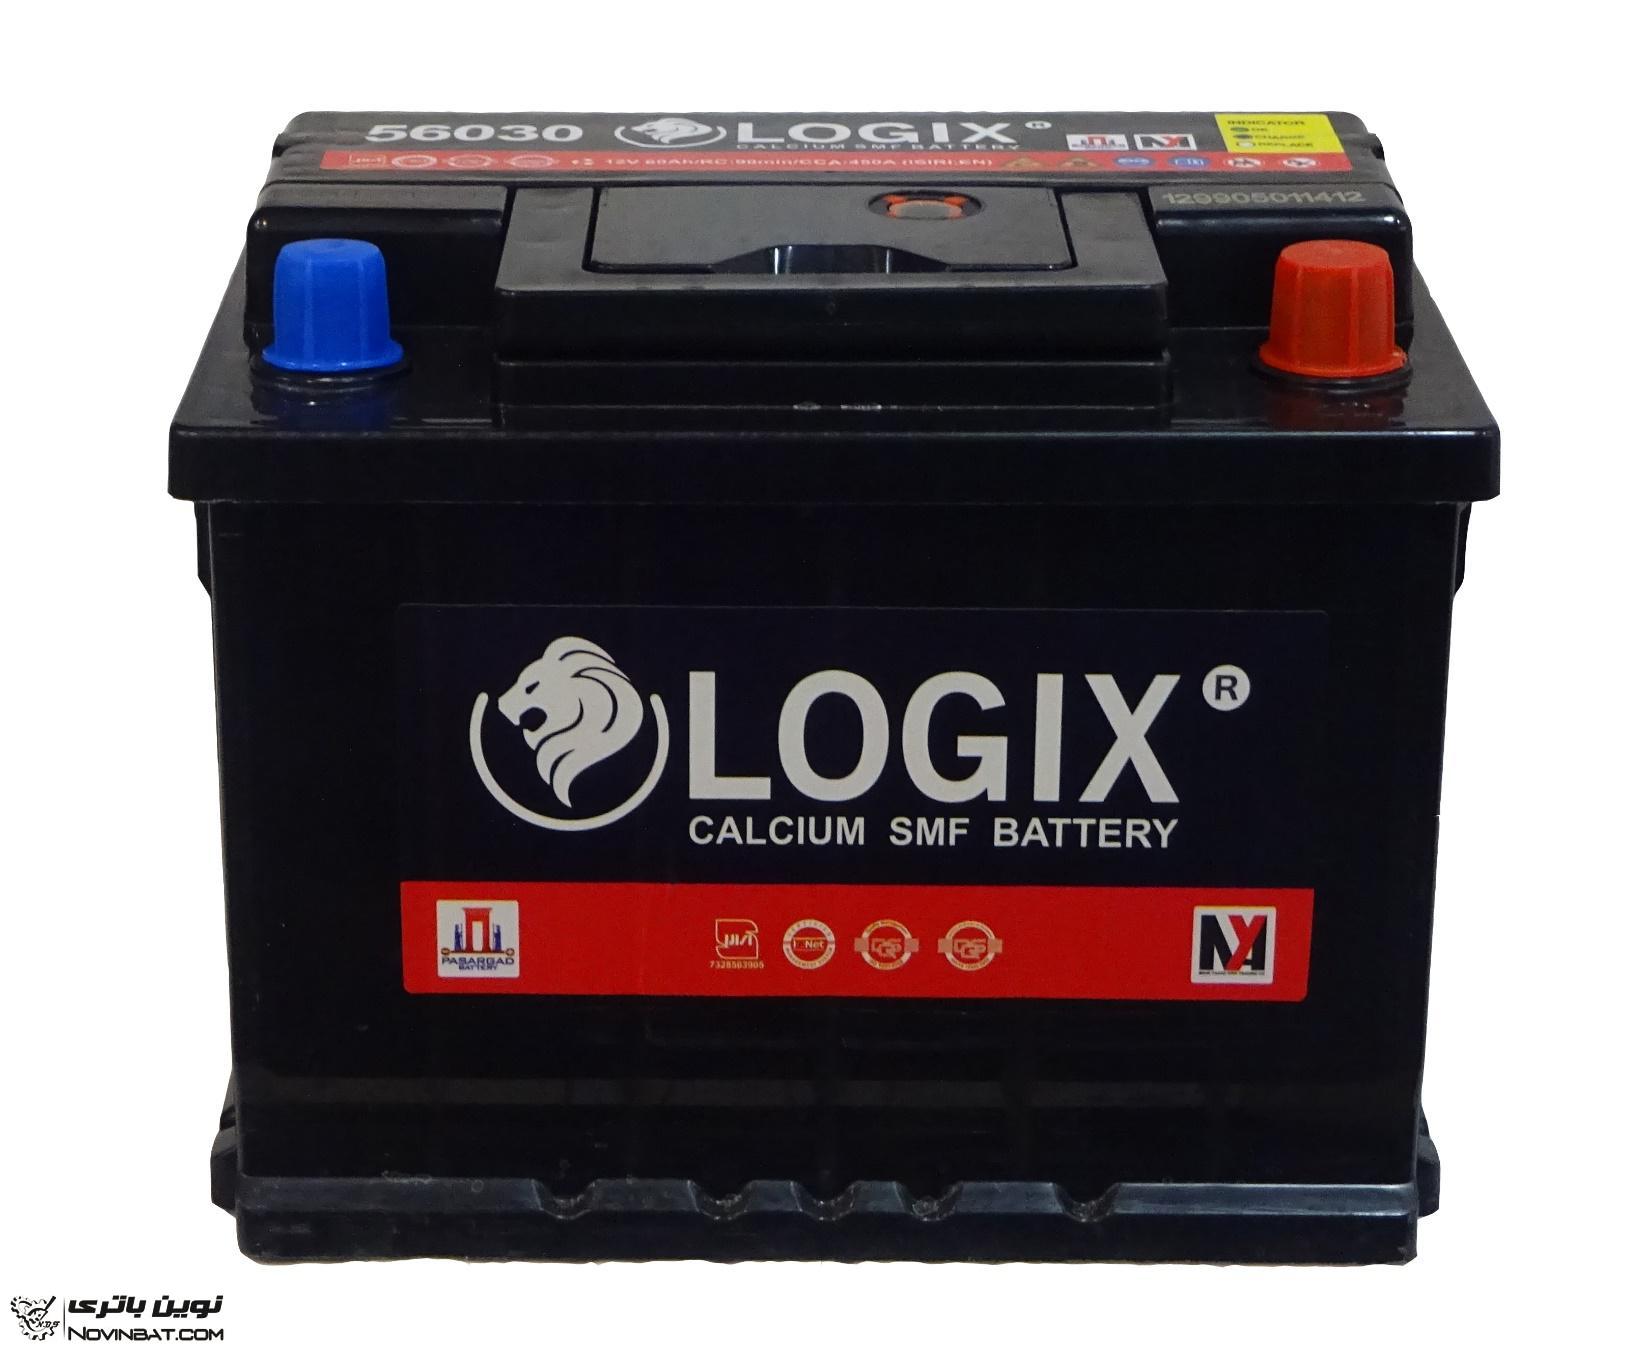 باتری لاجیکس در مشهد - LOGIX BATTERY